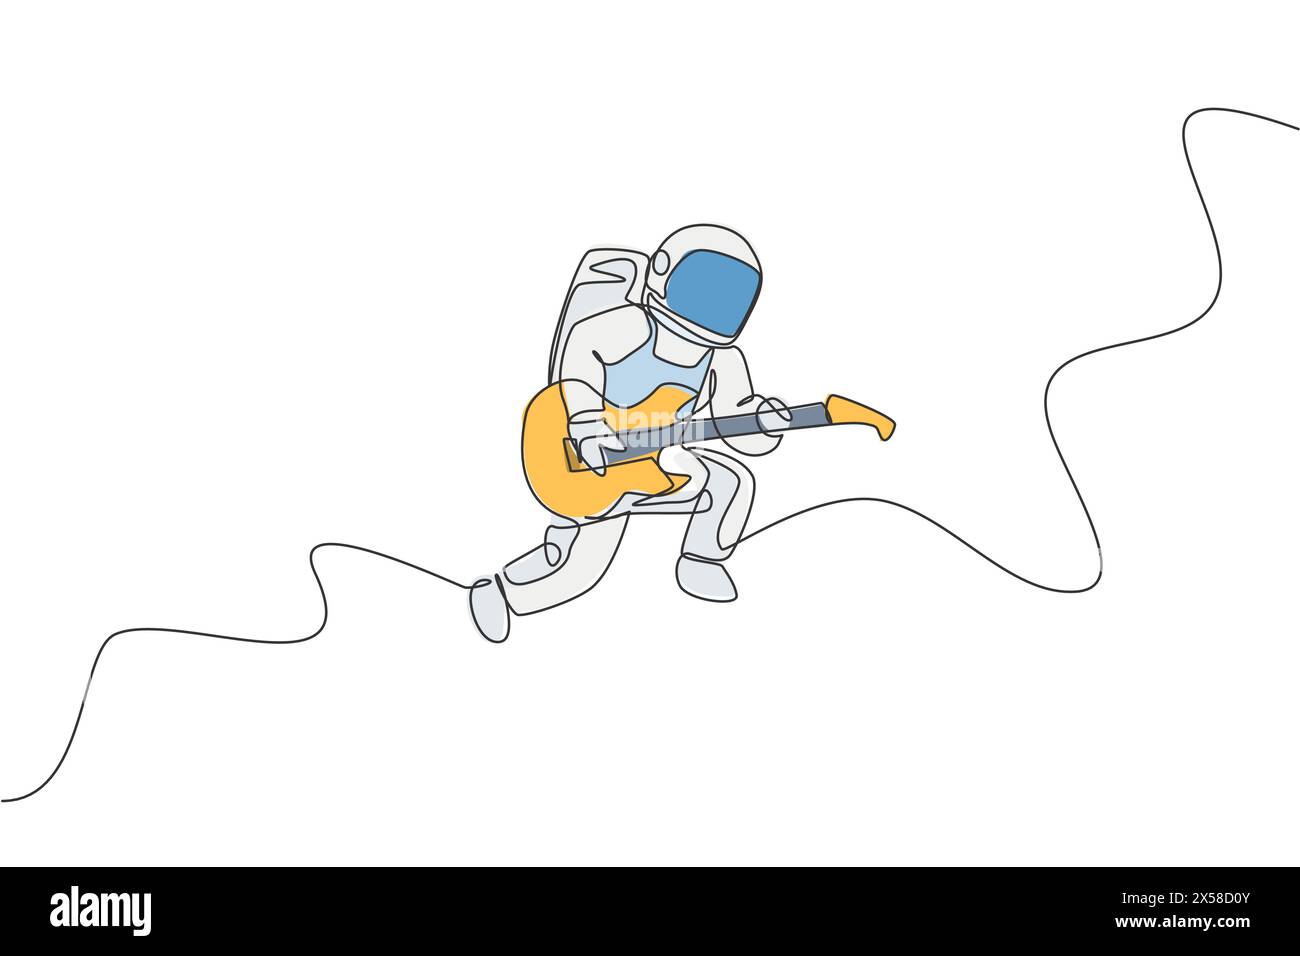 Un disegno continuo di astronauta con tuta spaziale che suona la chitarra acustica nell'universo galassico. Concerto di musica spaziale. Singolo dinamico Illustrazione Vettoriale